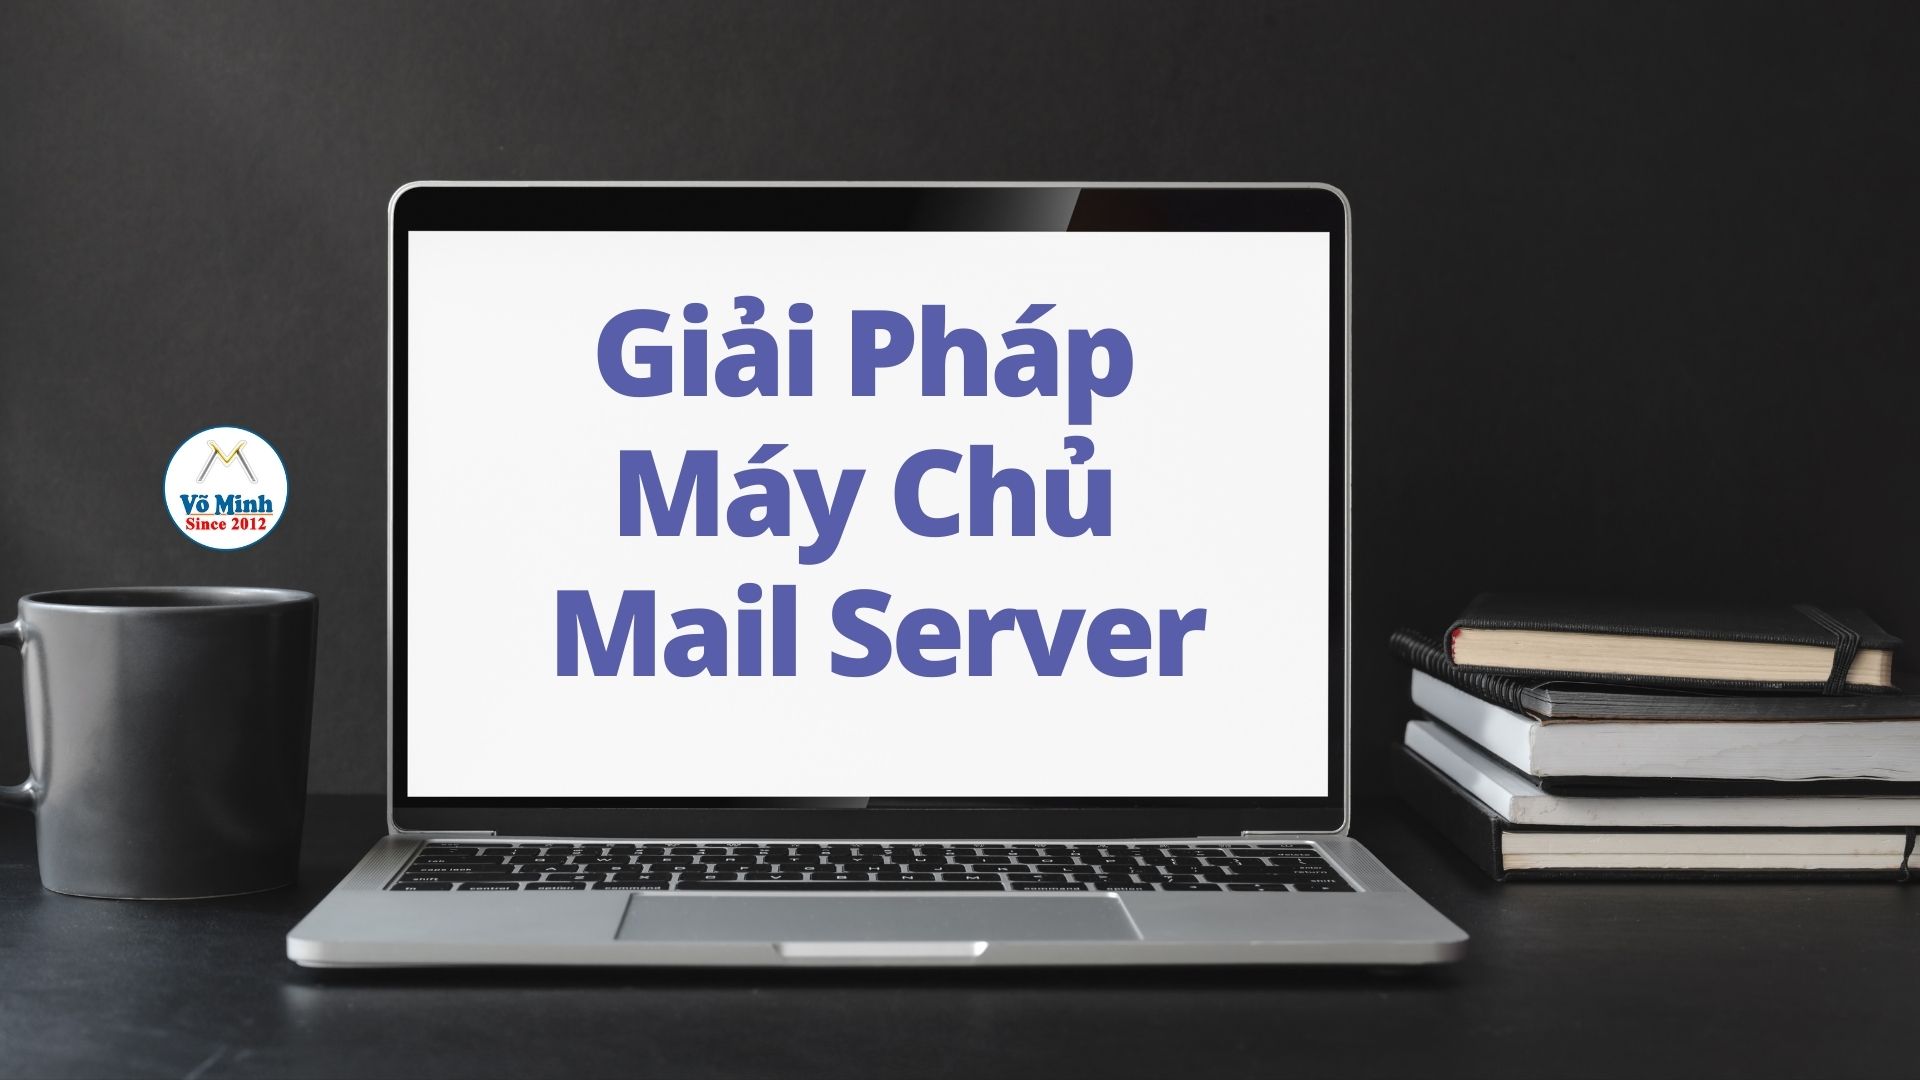 Giải pháp máy chủ Email Server cho cá nhân và doanh nghiệp